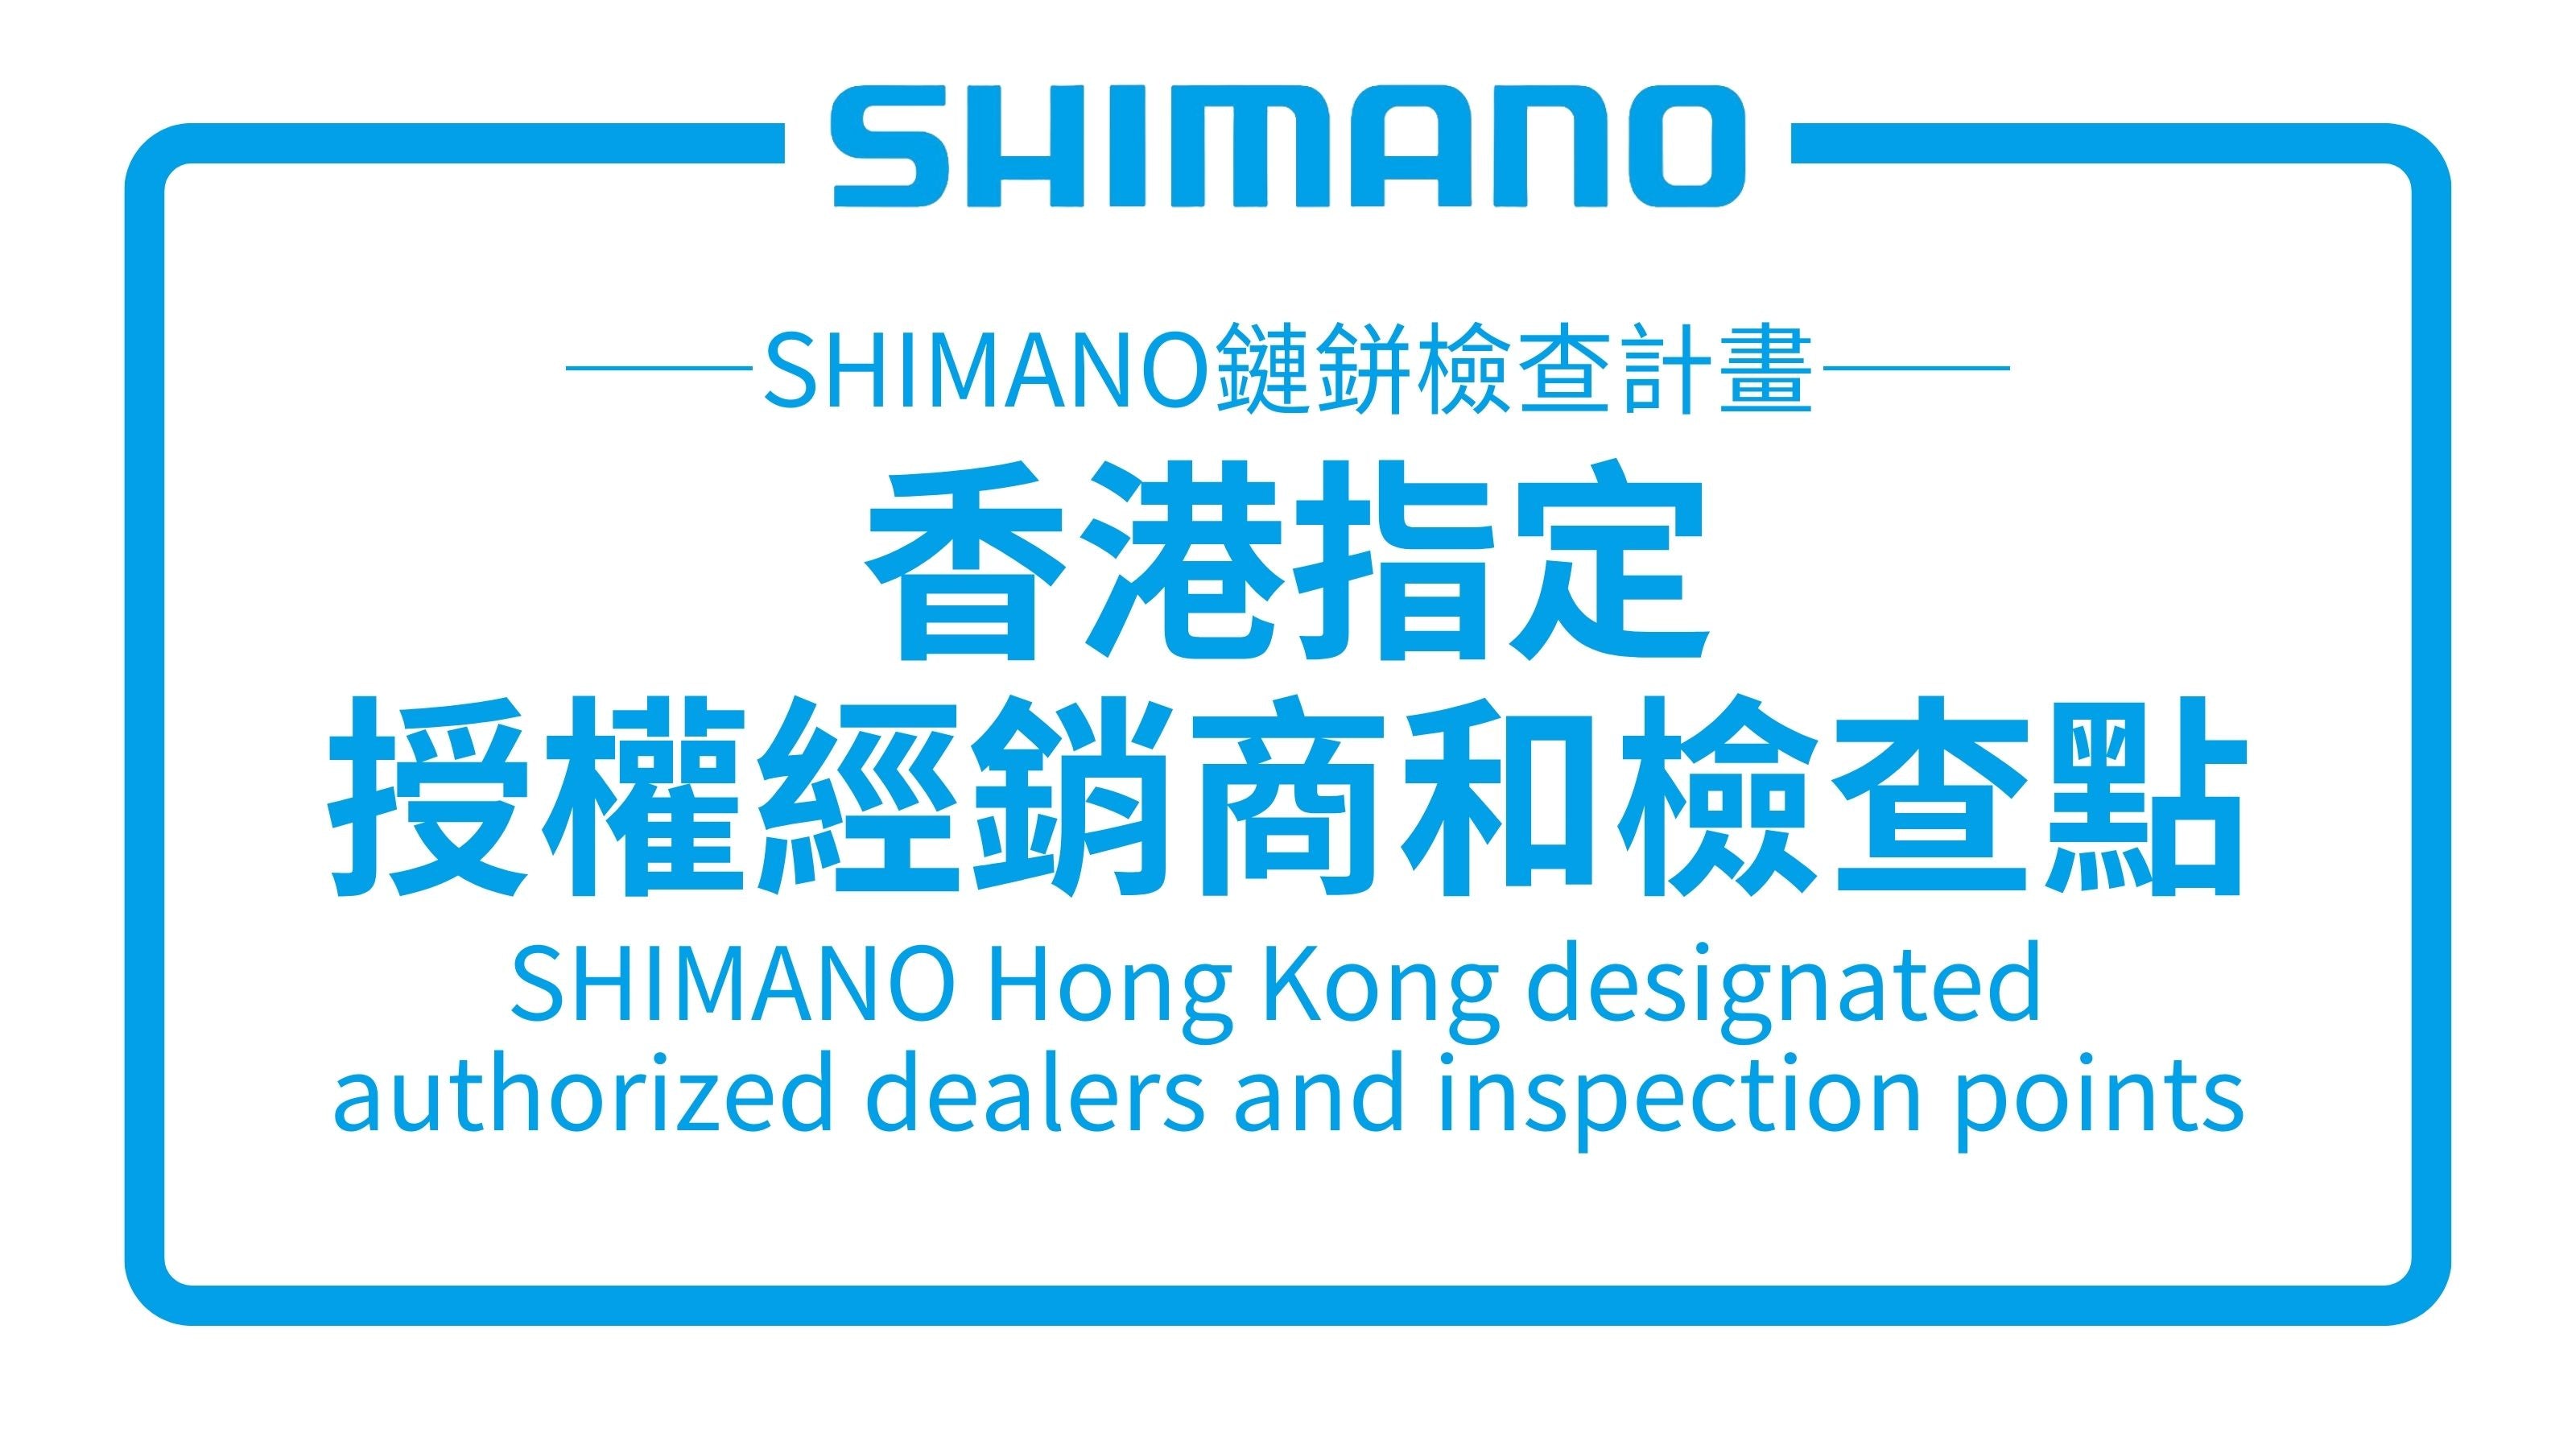 SHIMANO香港指定授權經銷商和檢查點